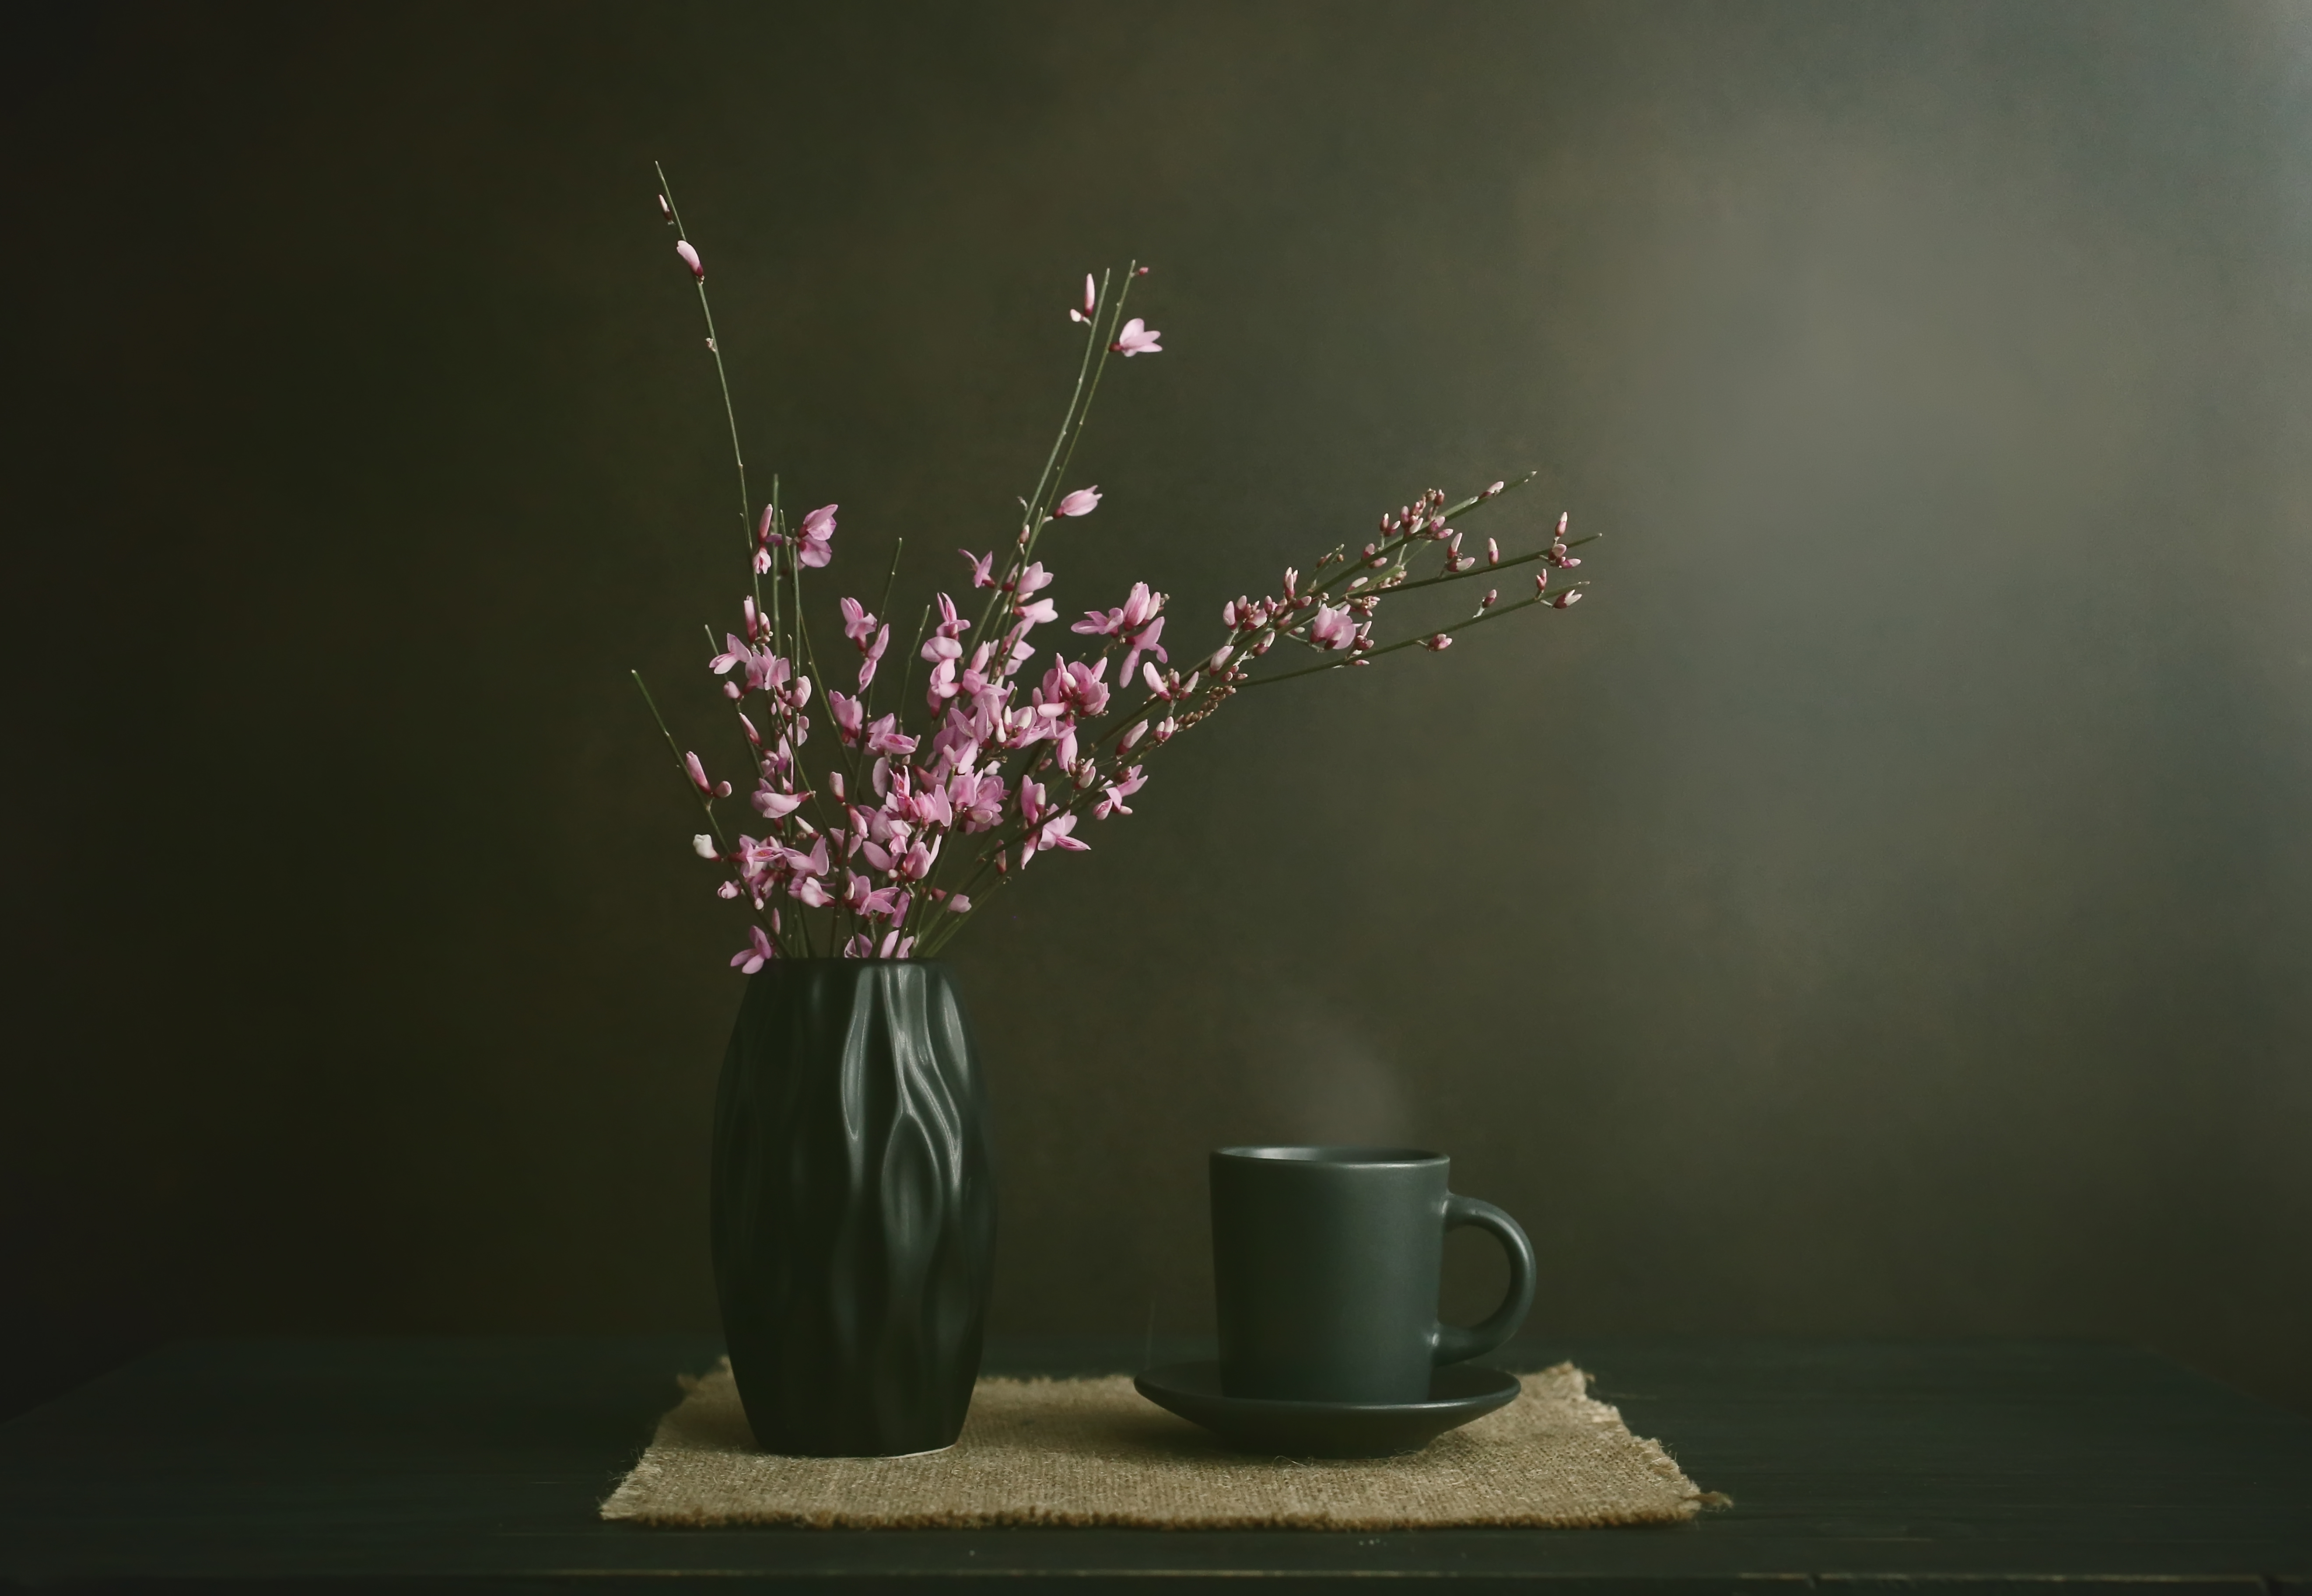 чашка кофе, оттенки цвета, чашка кофе, оттенки цвета, минимализм, a cup of coffee, shades of color, minimalism, Стасов Виталий